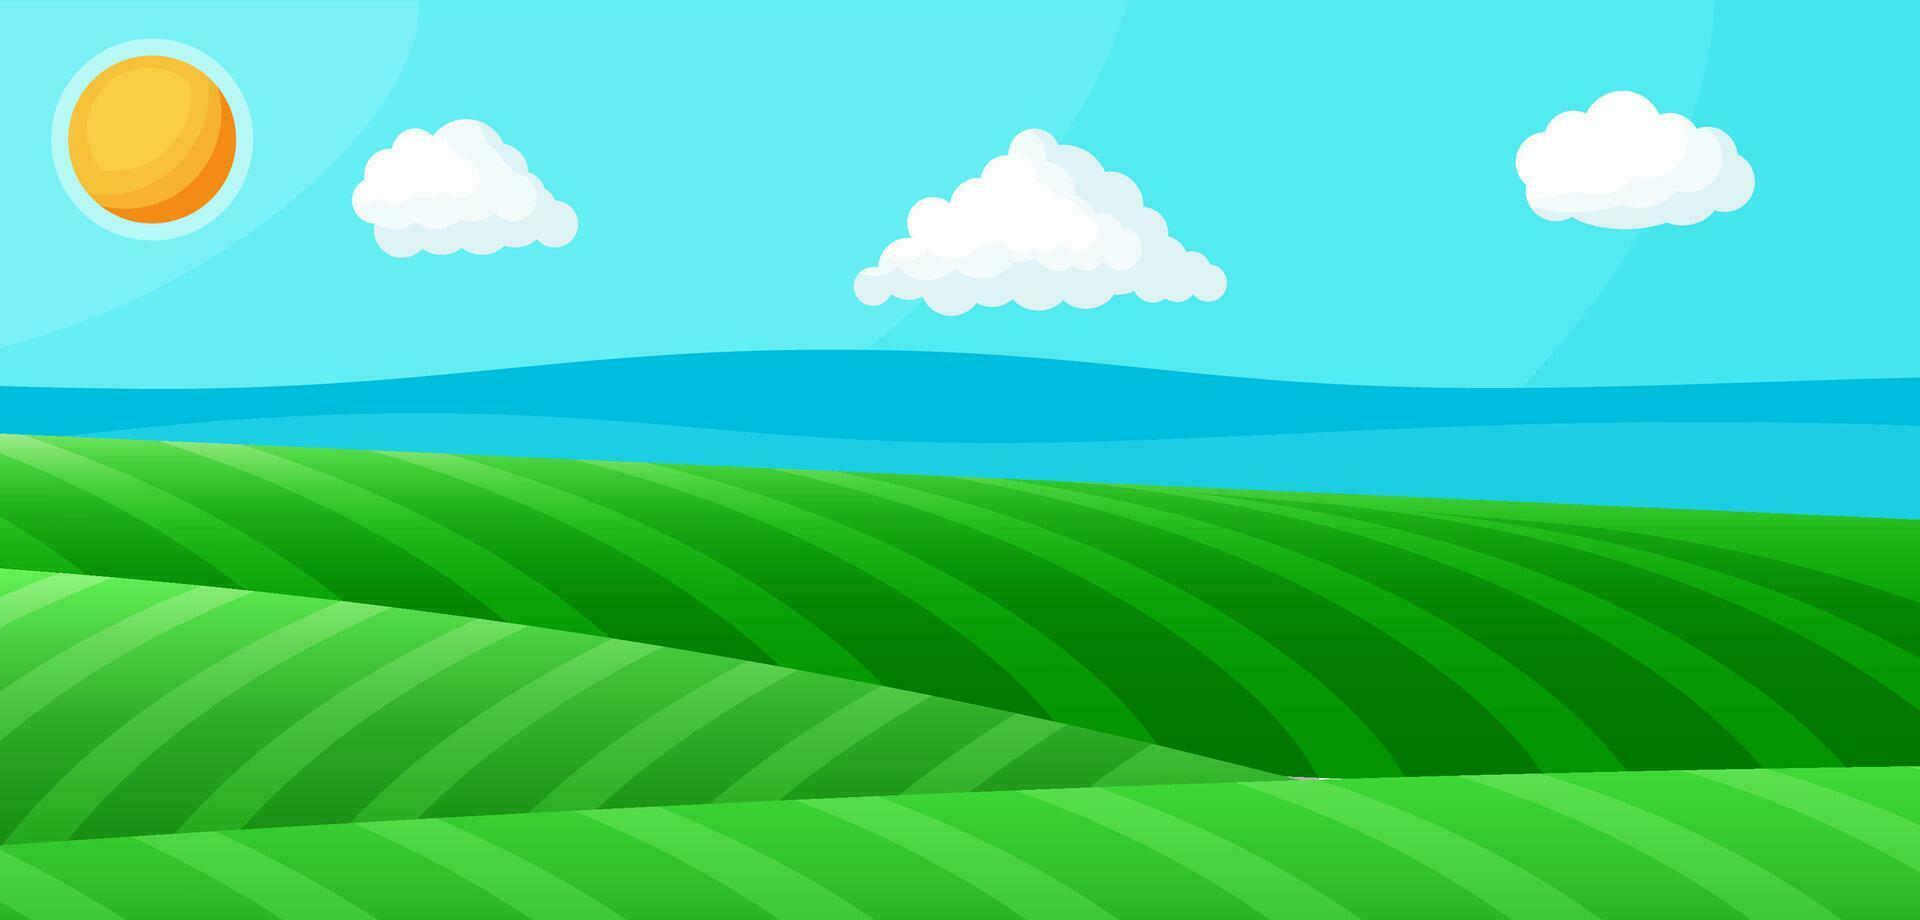 leeg groen landschap met blauw lucht, wolken en zon. groen weide met gras. zonnig open plekken met veld- grassen. natuur en vrijheid. nationaal park of natuur reserveren. vector illustratie in vlak stijl